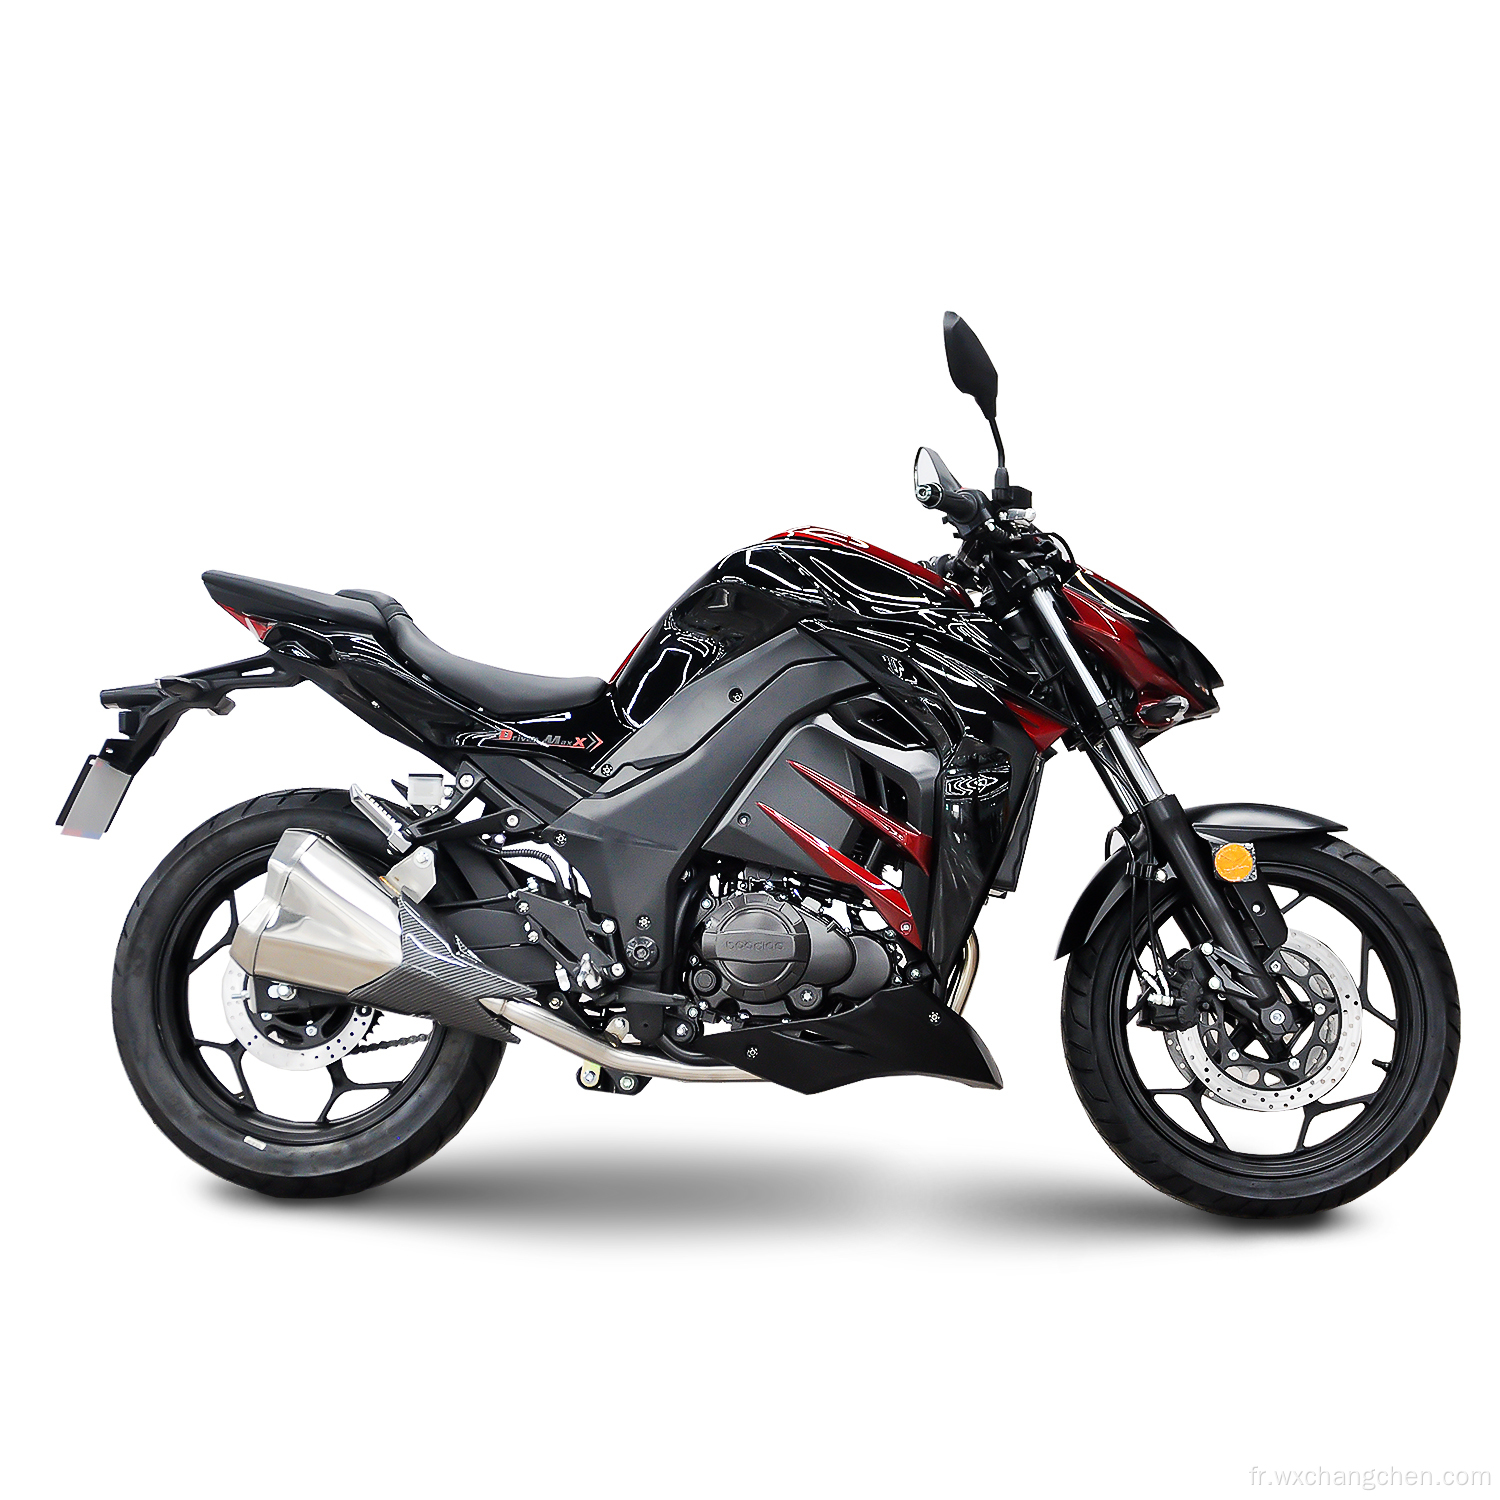 Dernite vente plus vendante Adulte Handsome Sports Racing Motorcycle d'essence hautes performances